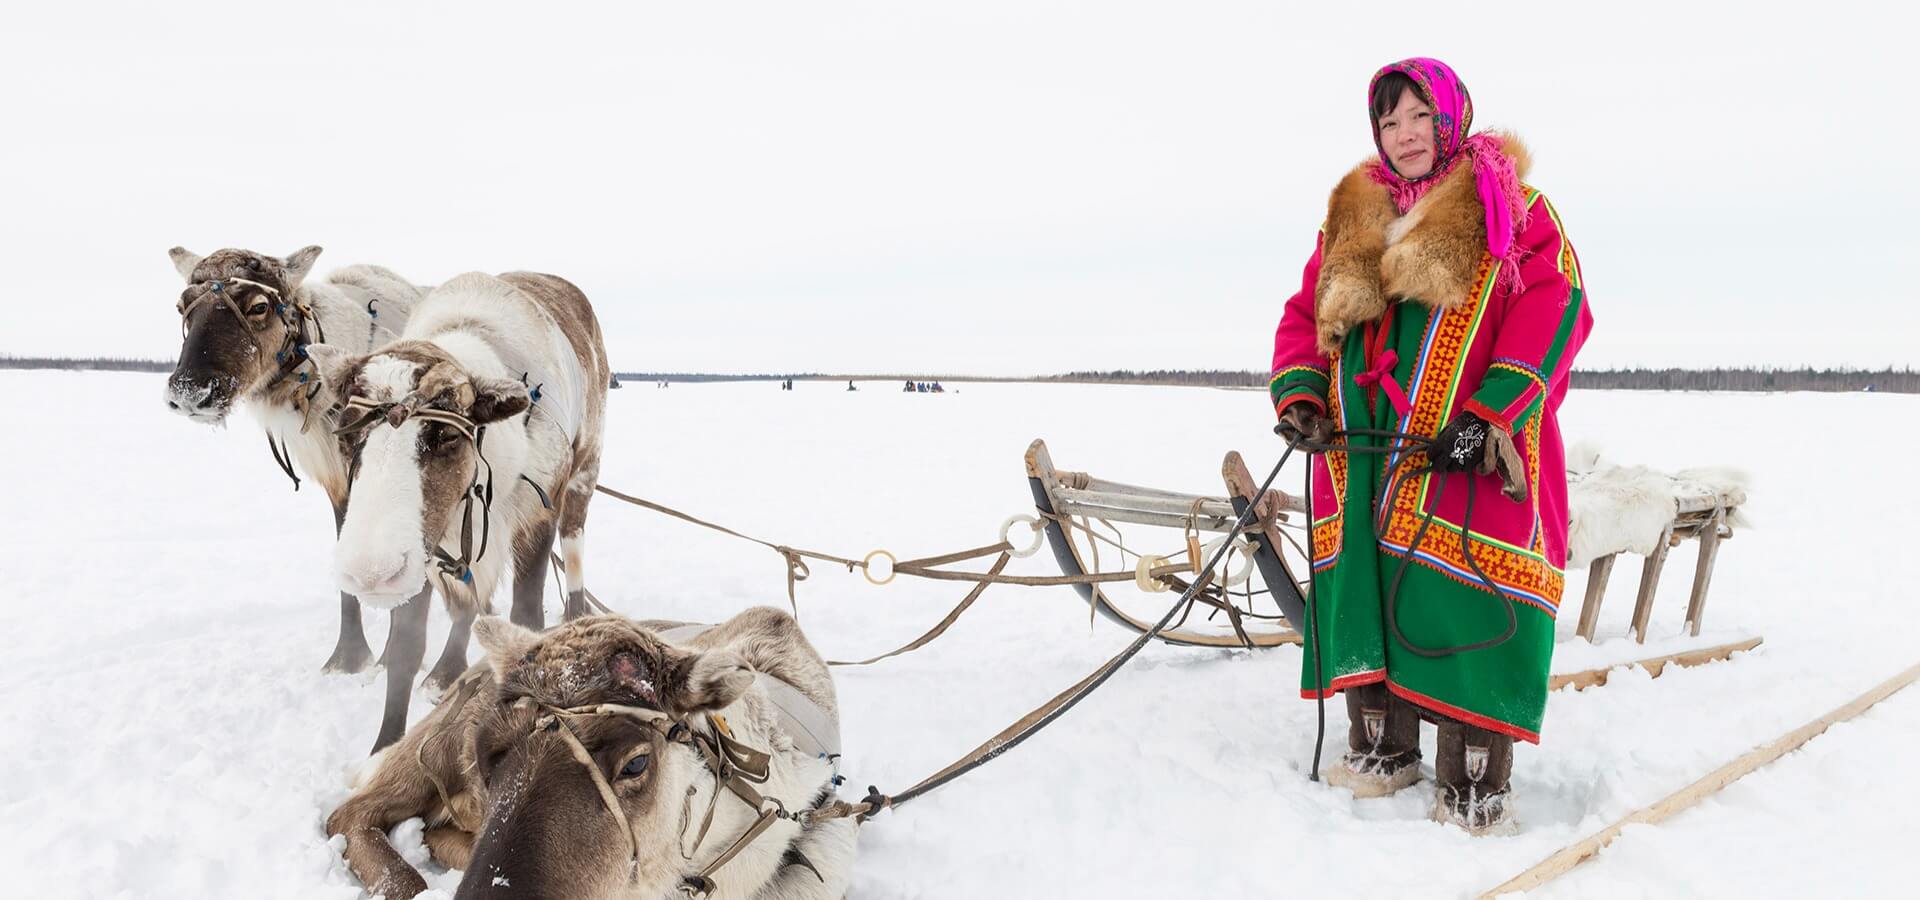 Retrato mulher indígena da Rússia com seu trenó